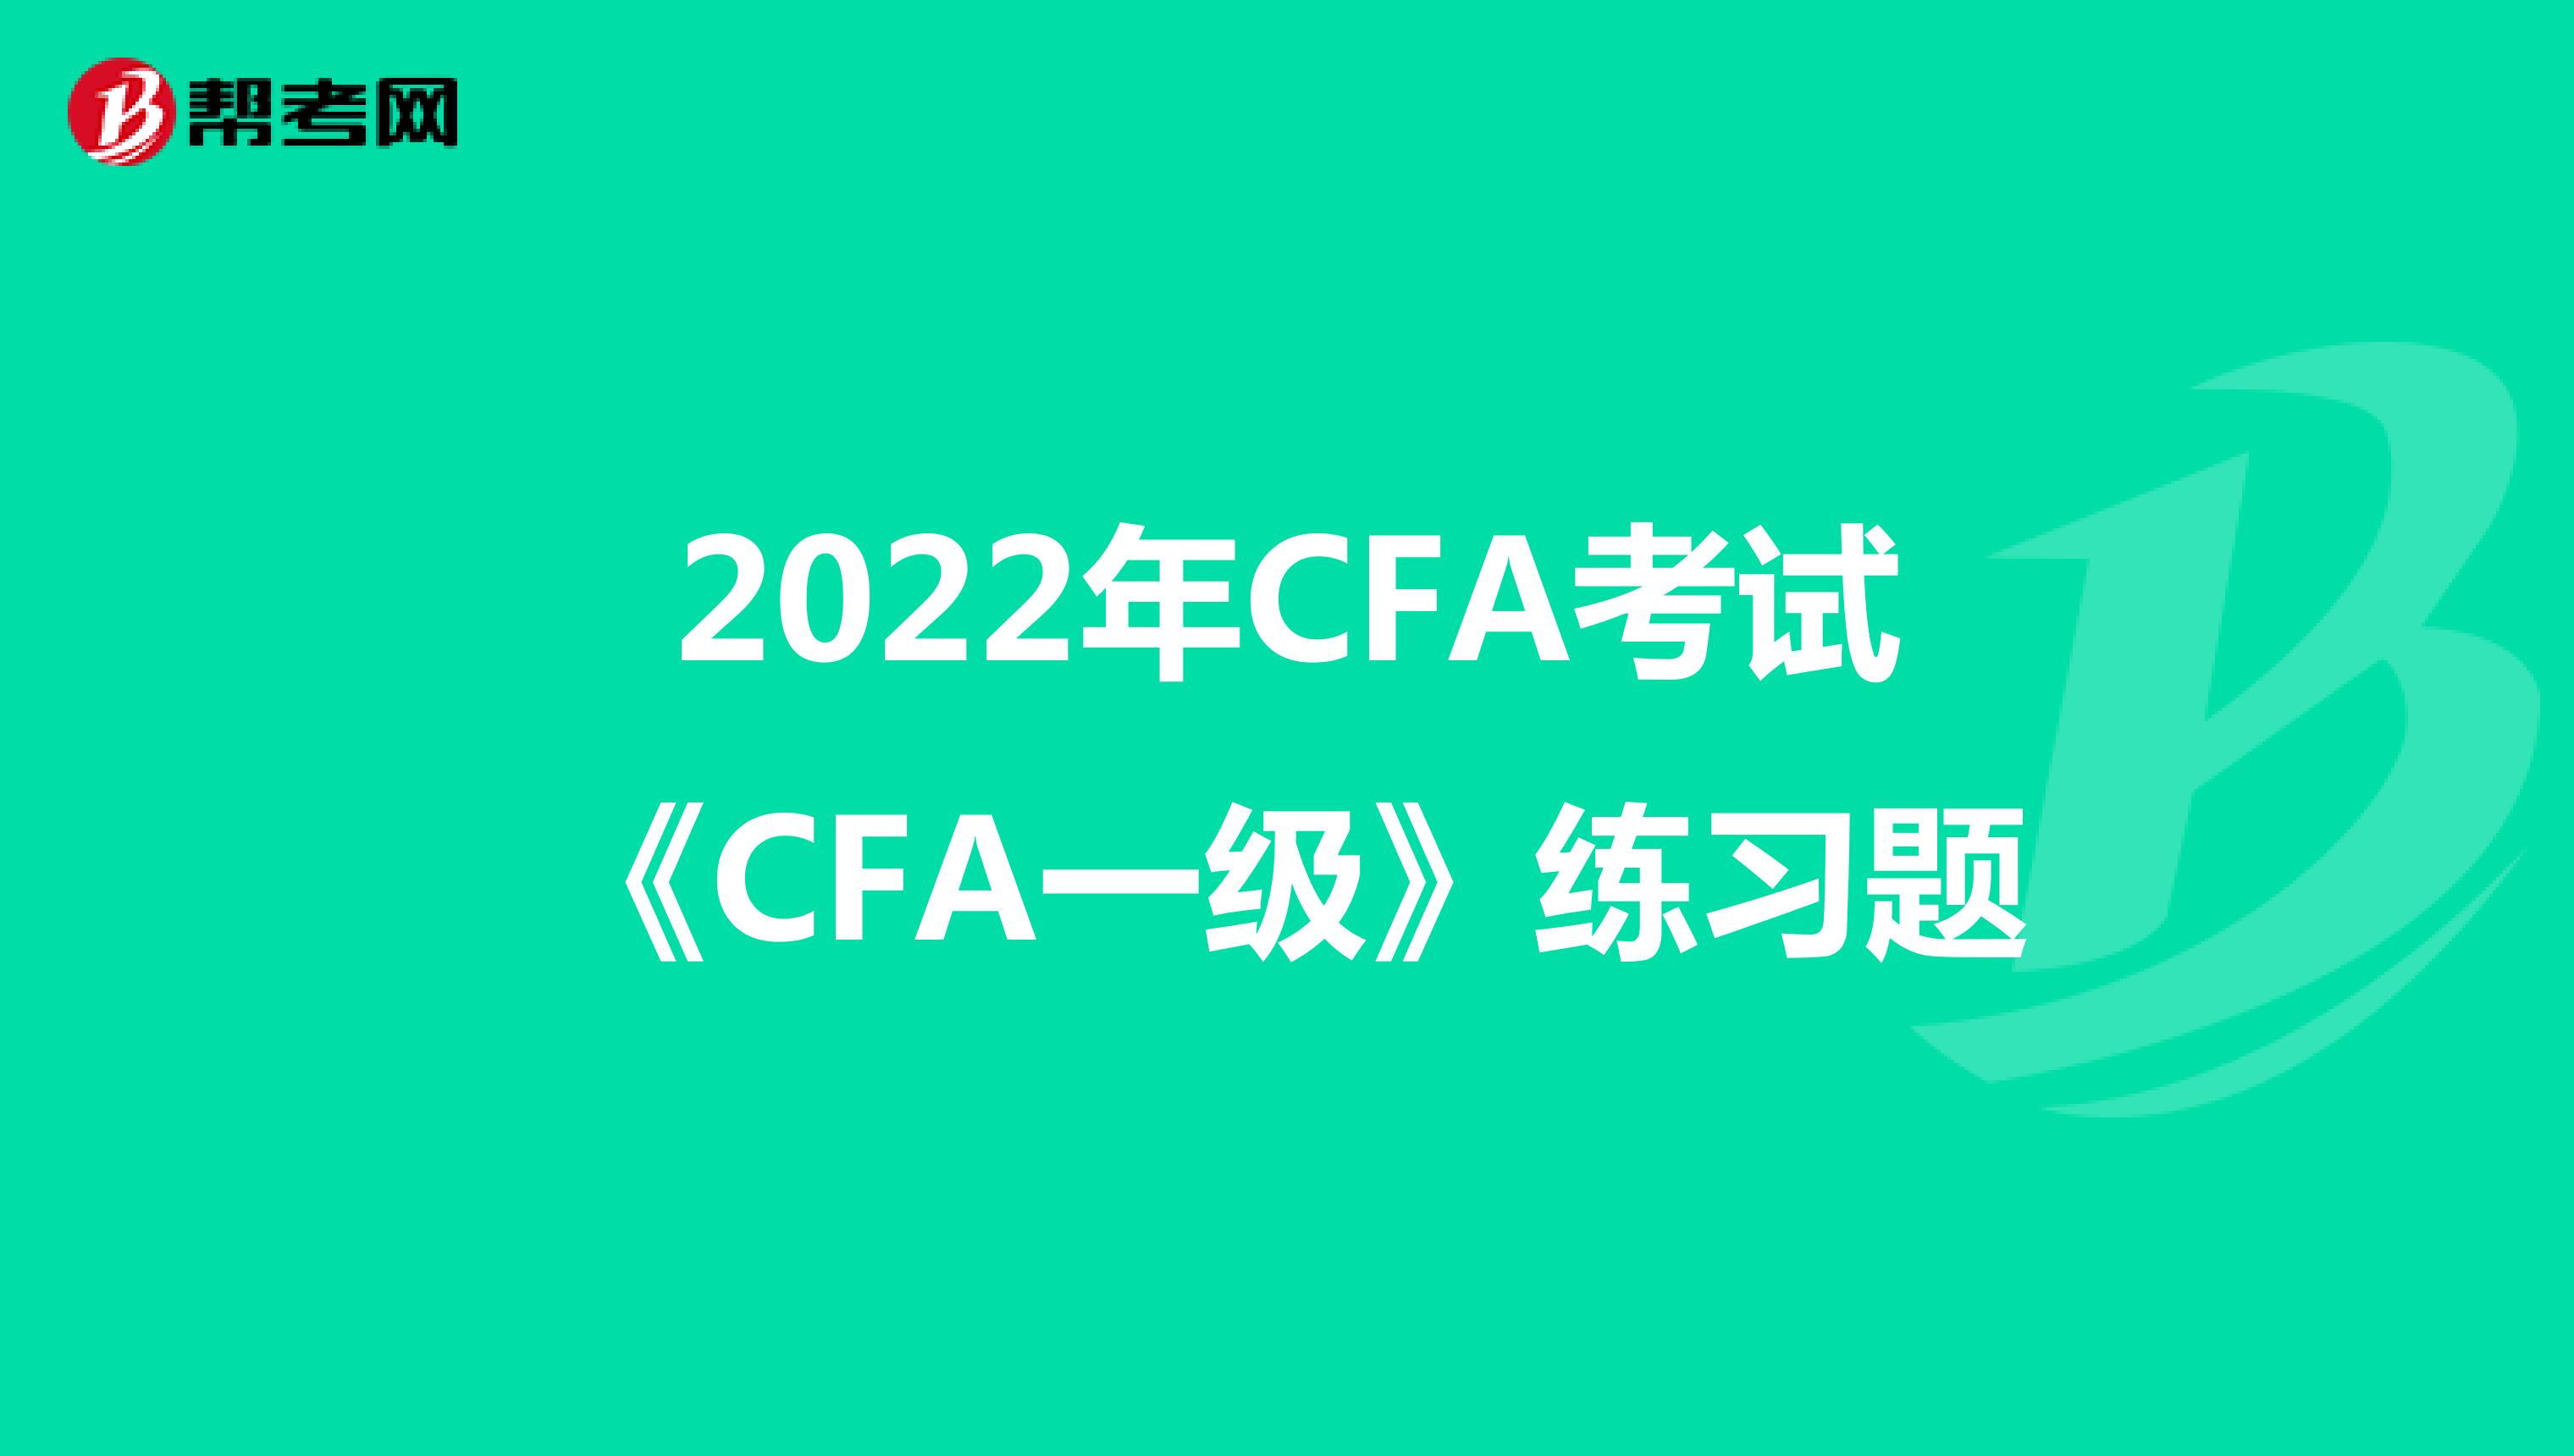 2022年CFA考试《CFA一级》练习题